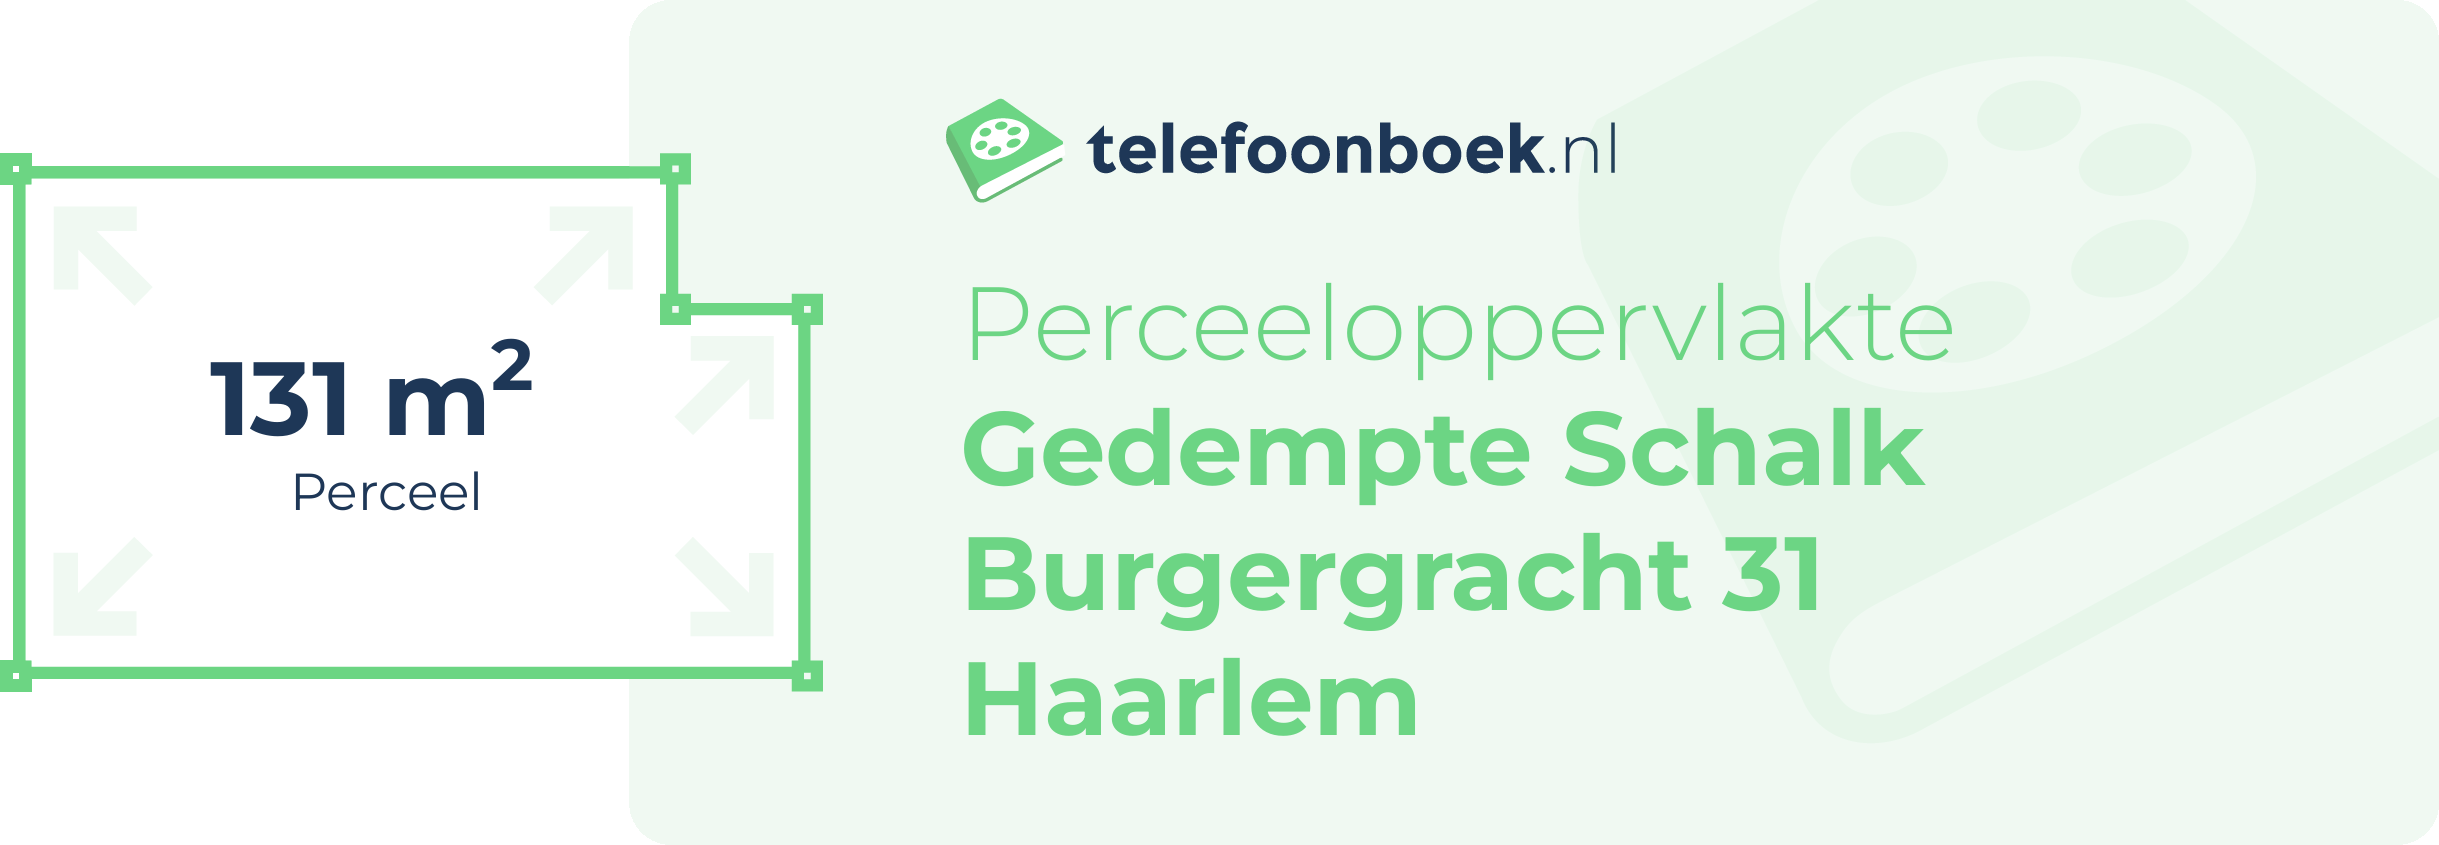 Perceeloppervlakte Gedempte Schalk Burgergracht 31 Haarlem